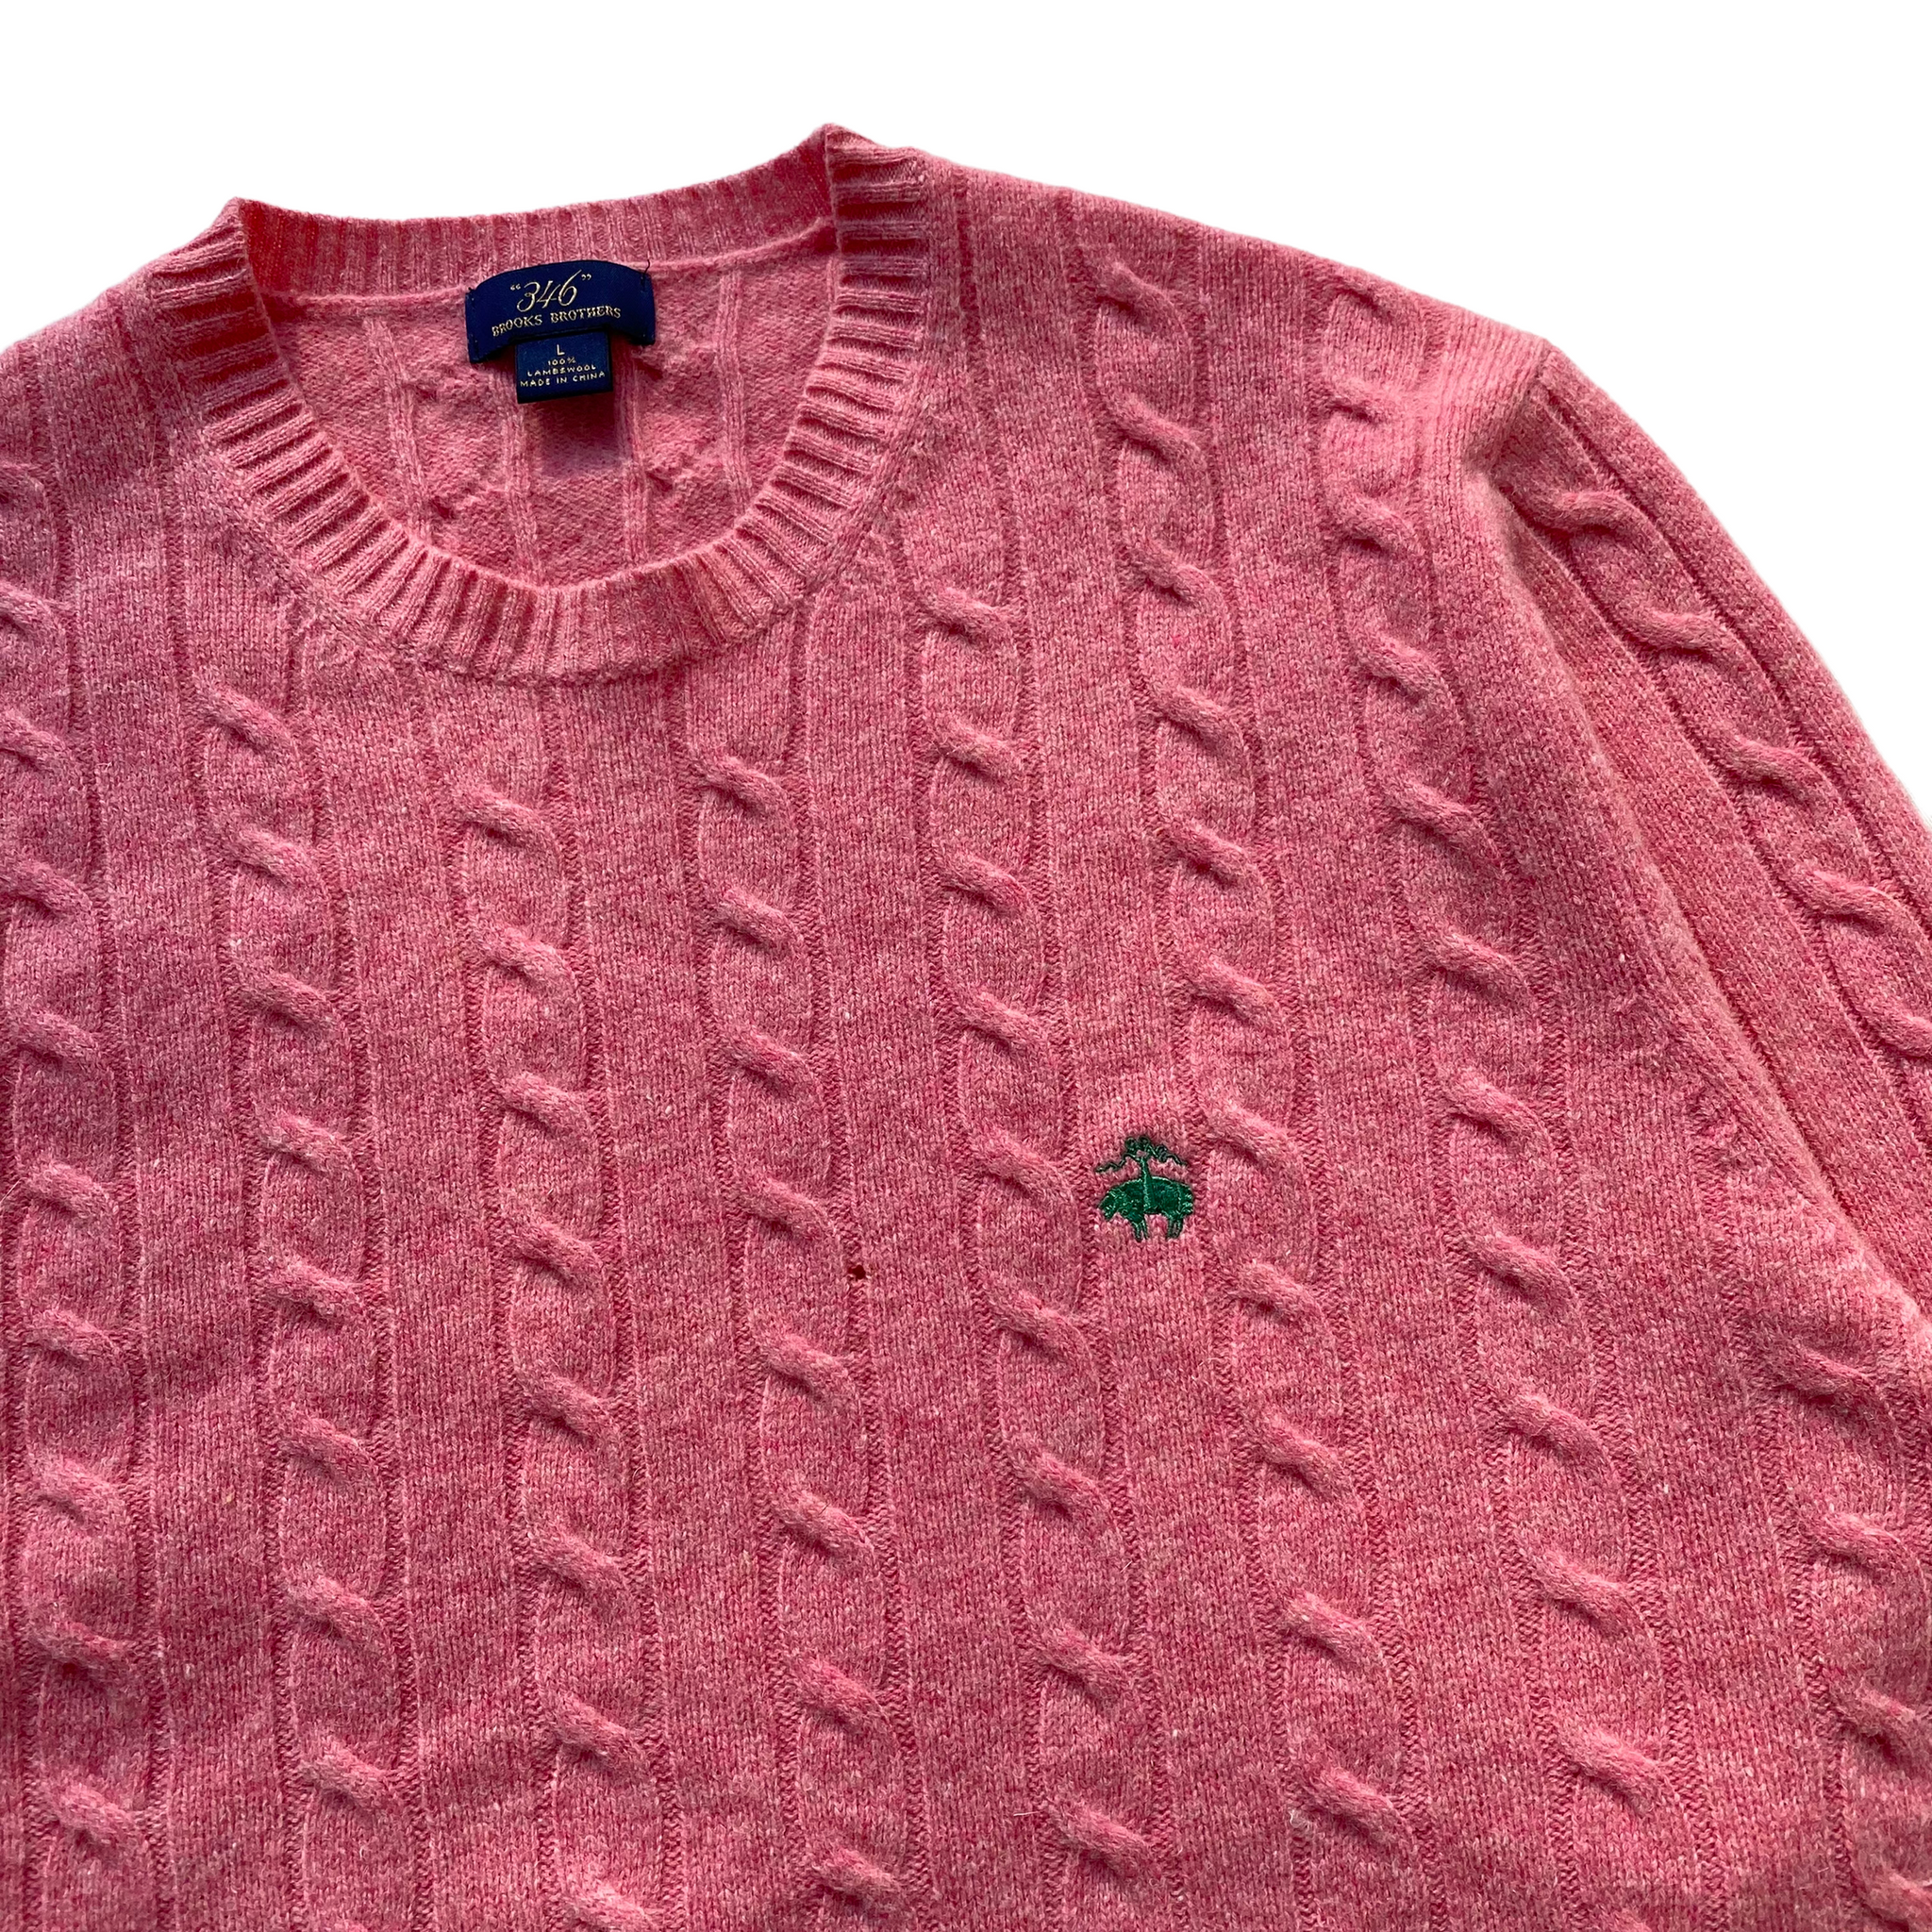 Brooks brothers lambs wool sweater large – Vintage Sponsor